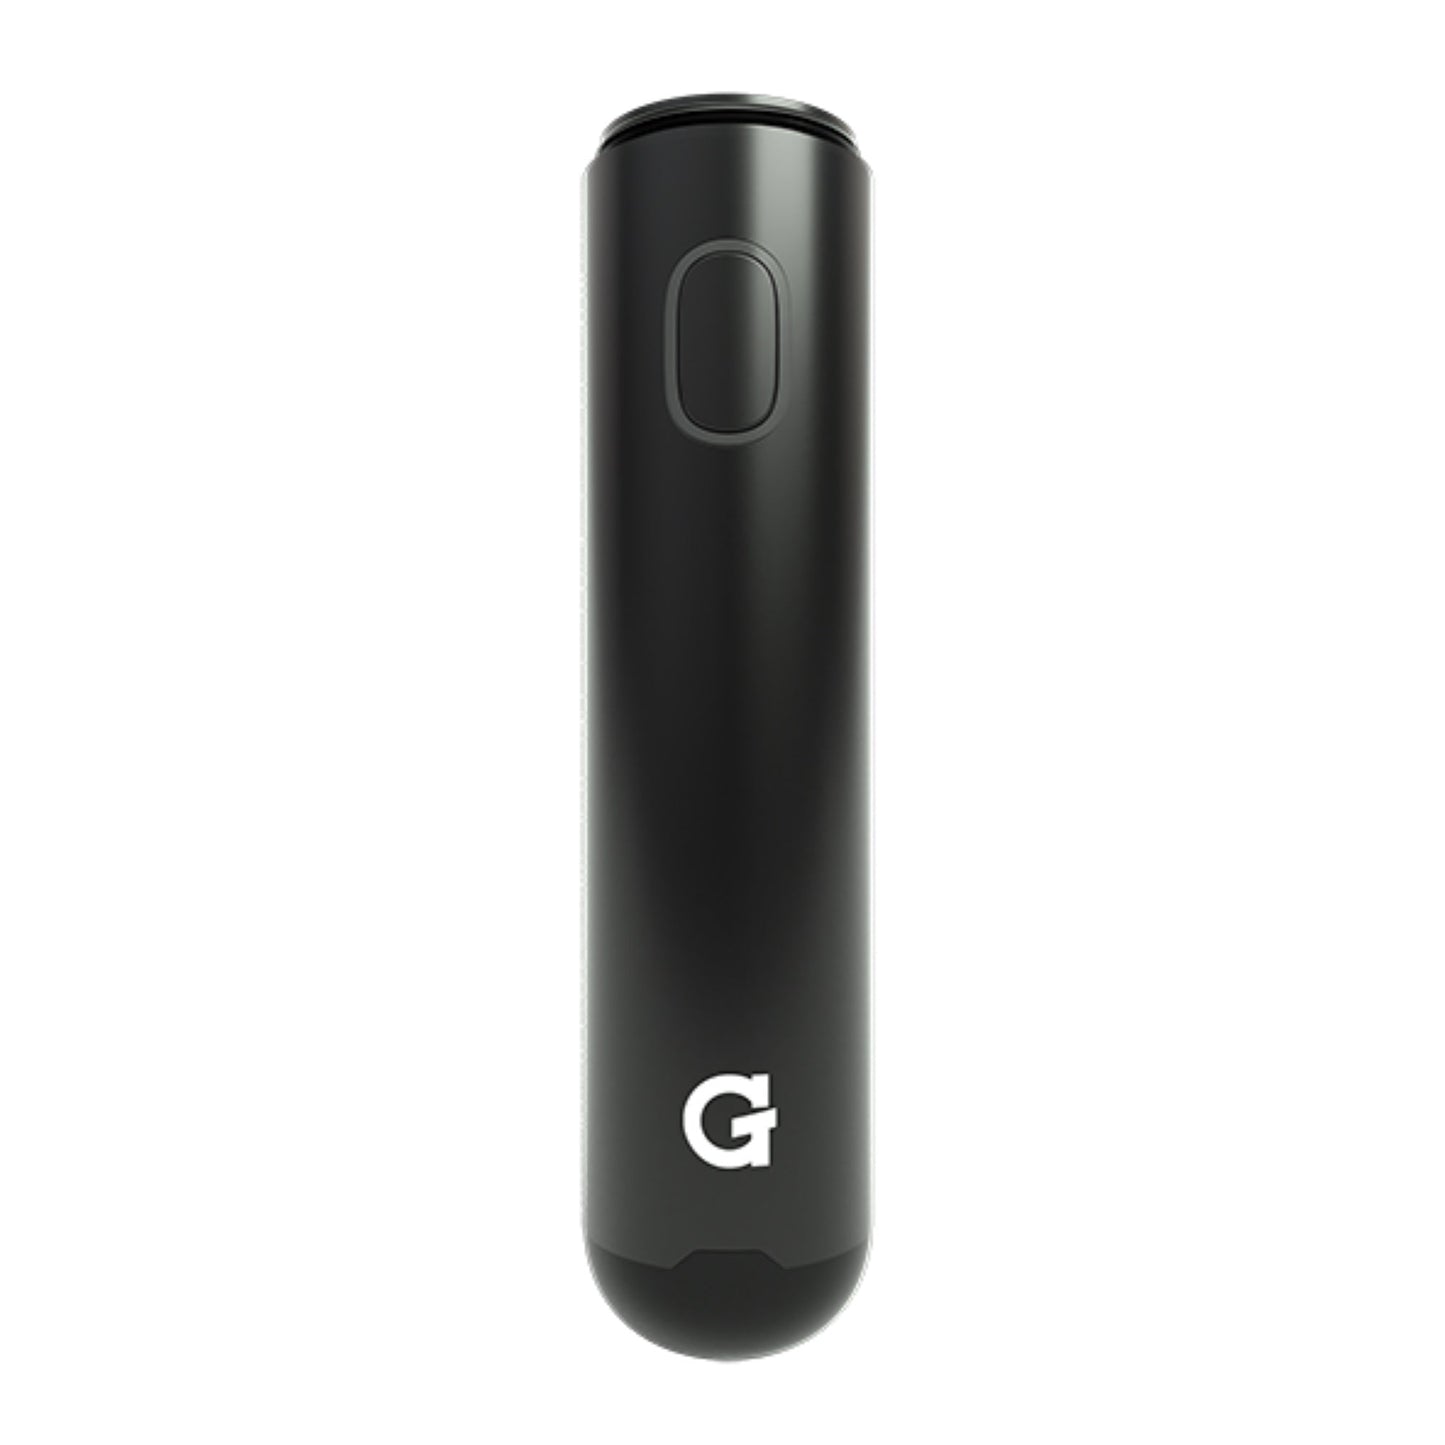 Grenco Science G Pen Micro+ Vaporizer